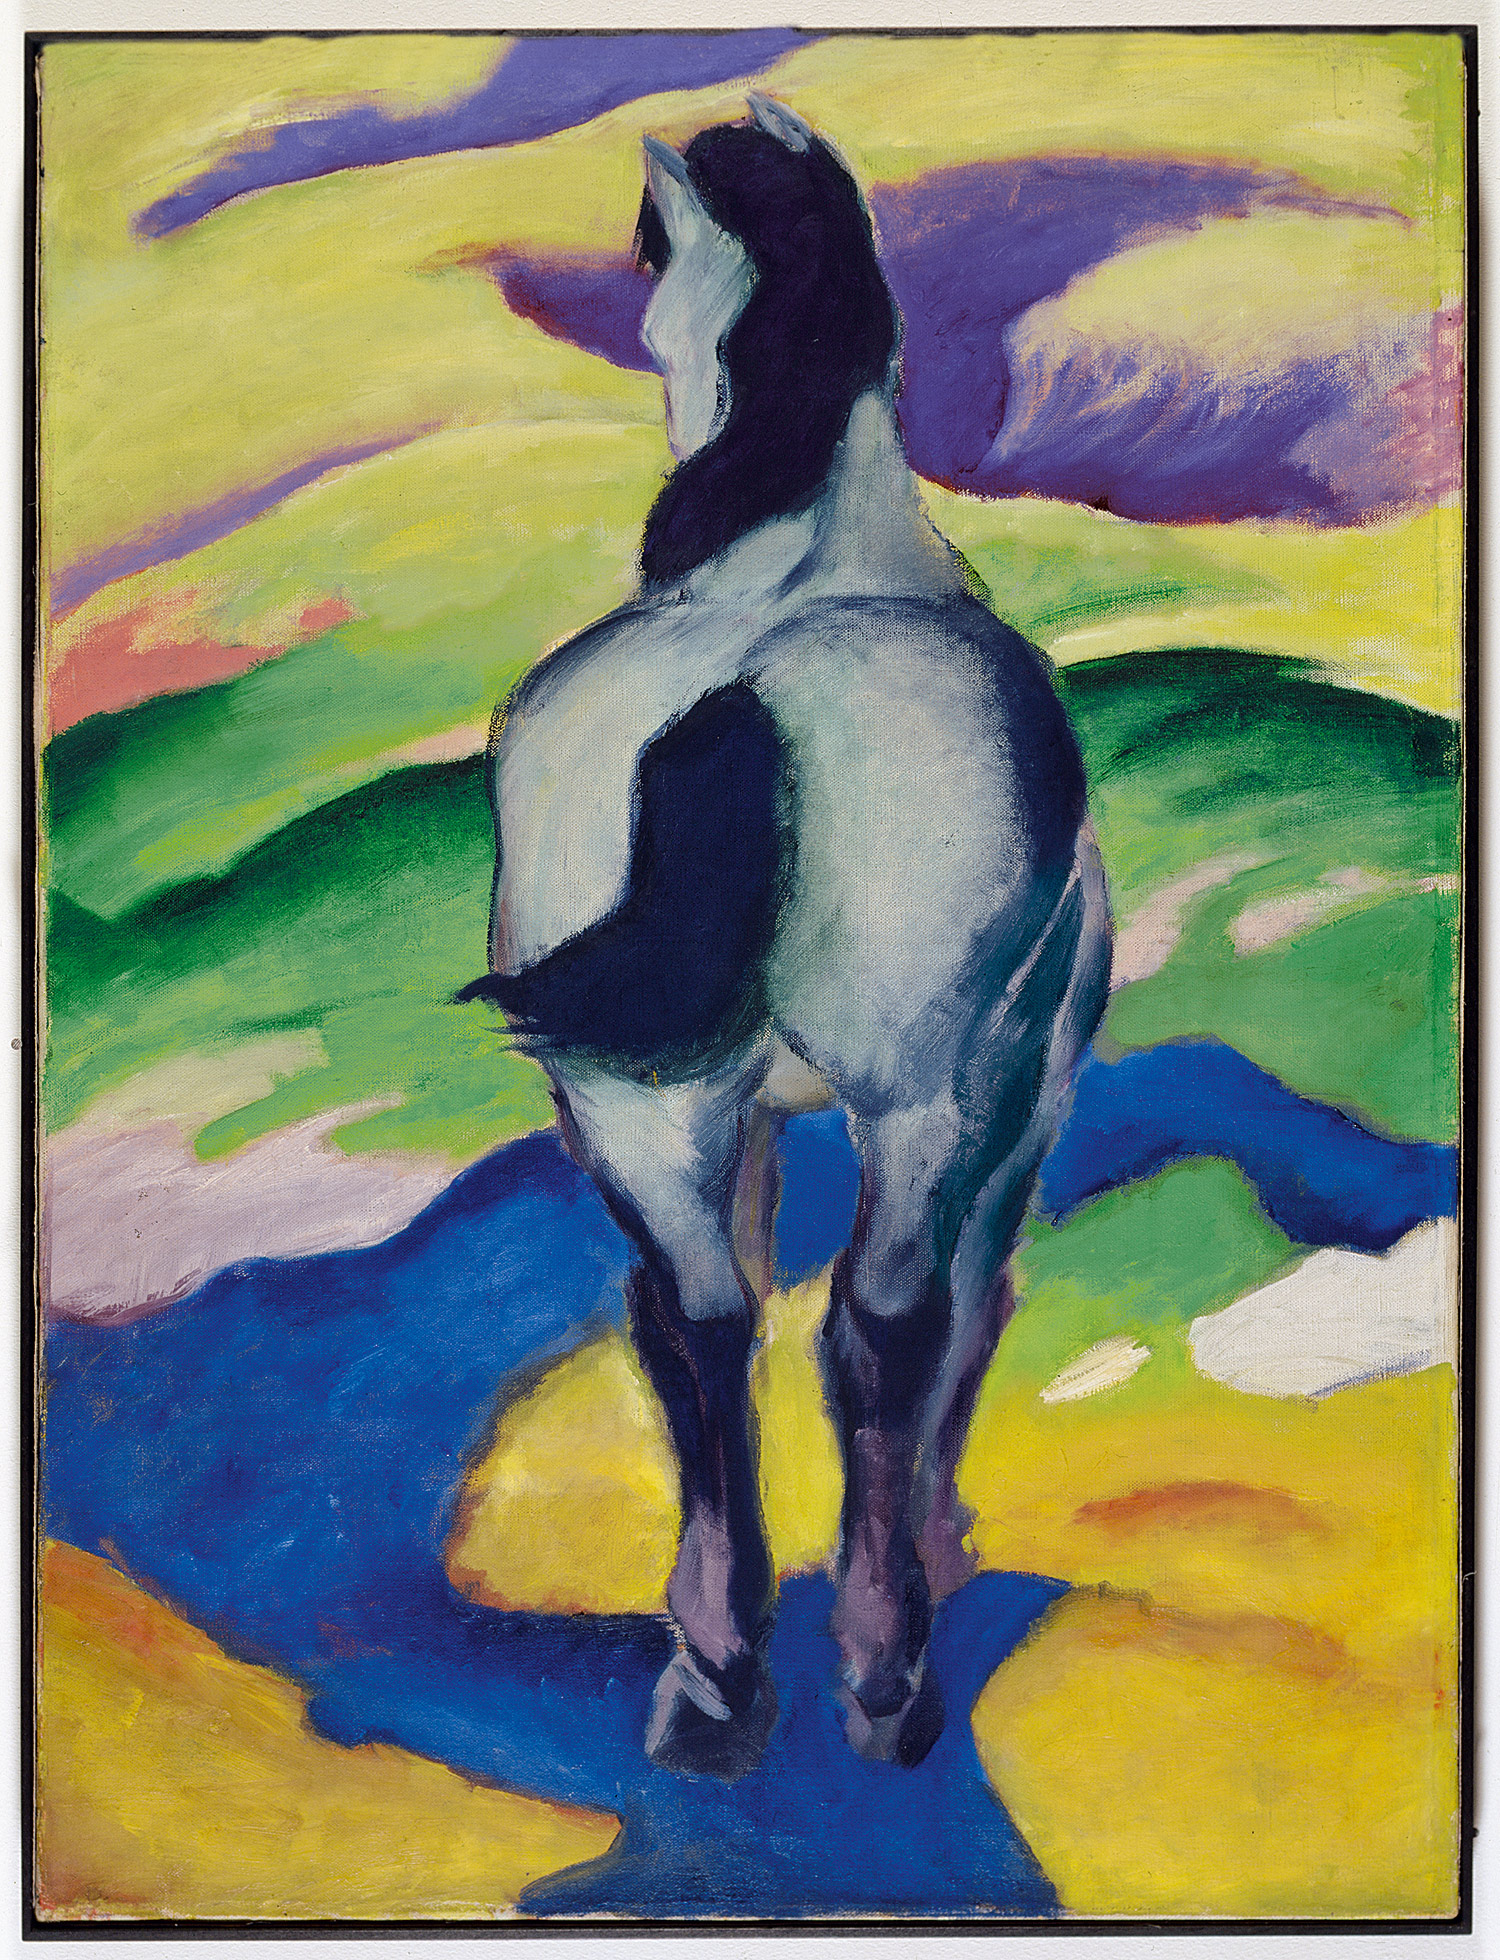 الحصان الأزرق الثاني by Franz Marc - 1911 م 